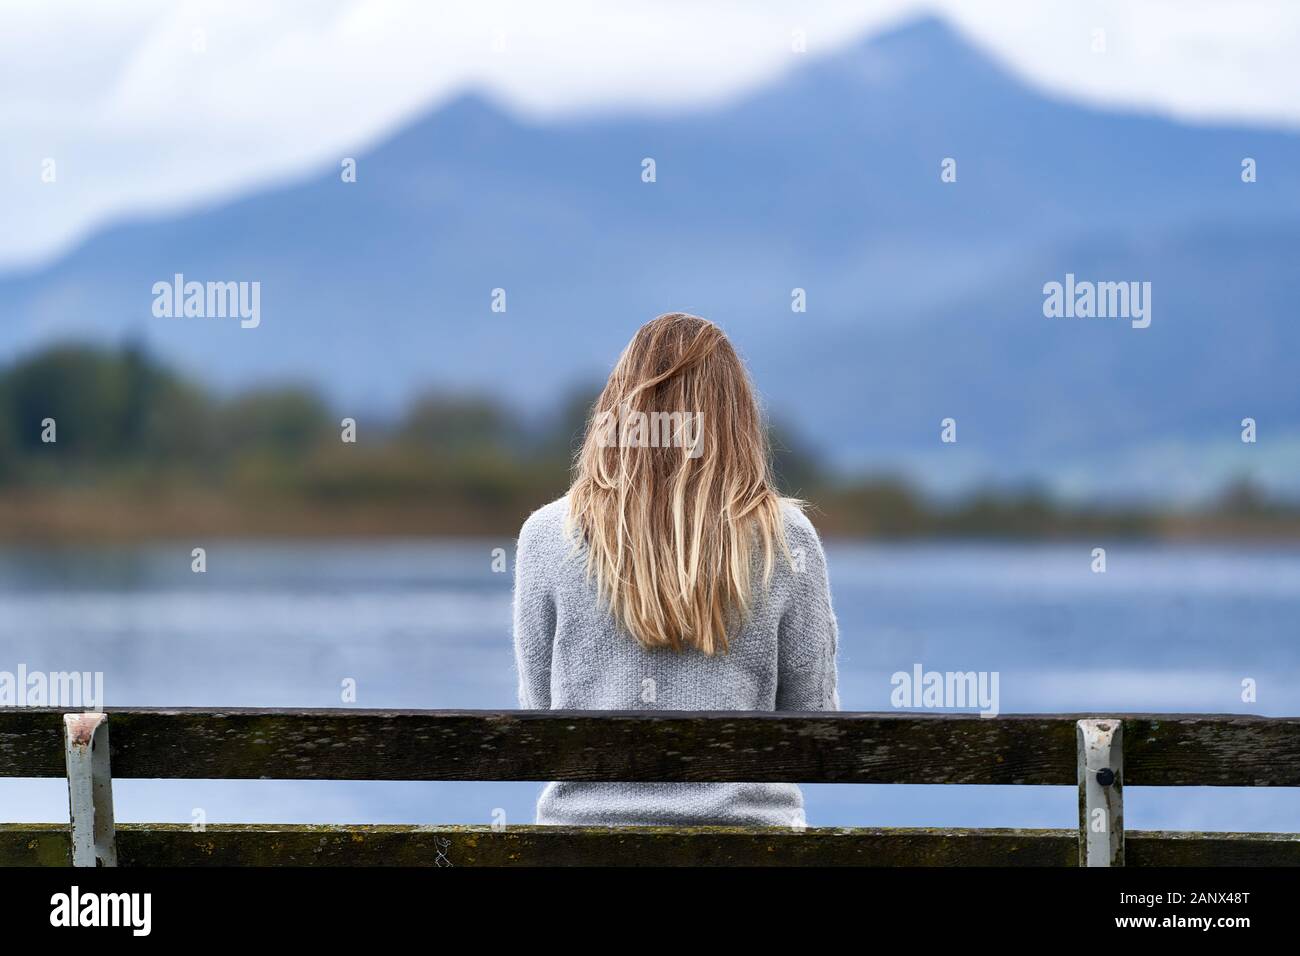 Jeune fille blonde avec de longs cheveux, asseyez-vous à l'appareil photo sur un banc en bois devant un lac calme de Baviera. Composition pittoresque avec m bleu Banque D'Images